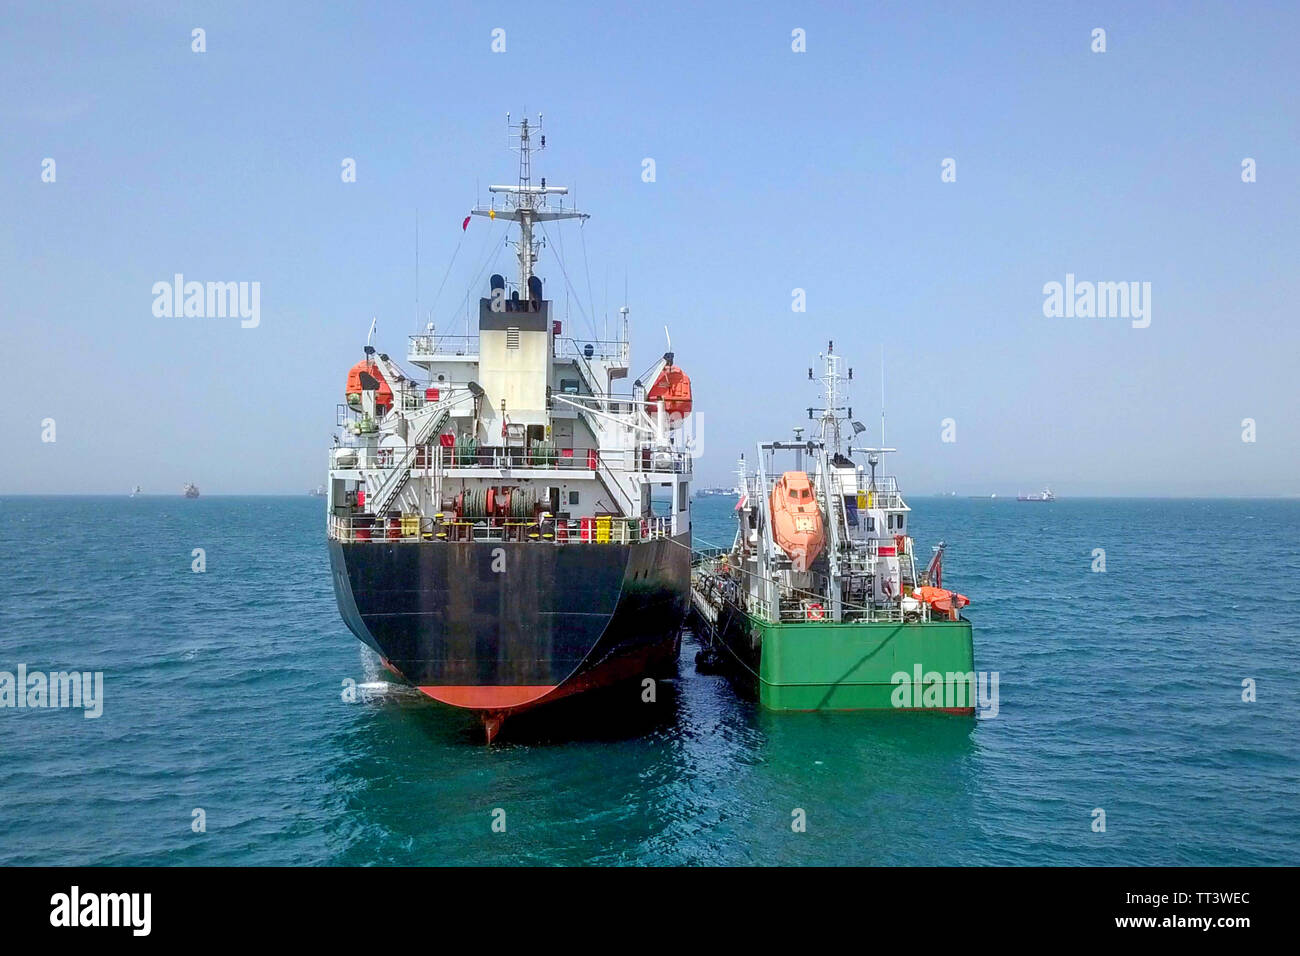 Le ravitaillement en mer - petits produits d'huile alimentant un grand navire vraquier, de l'image aérienne. Banque D'Images